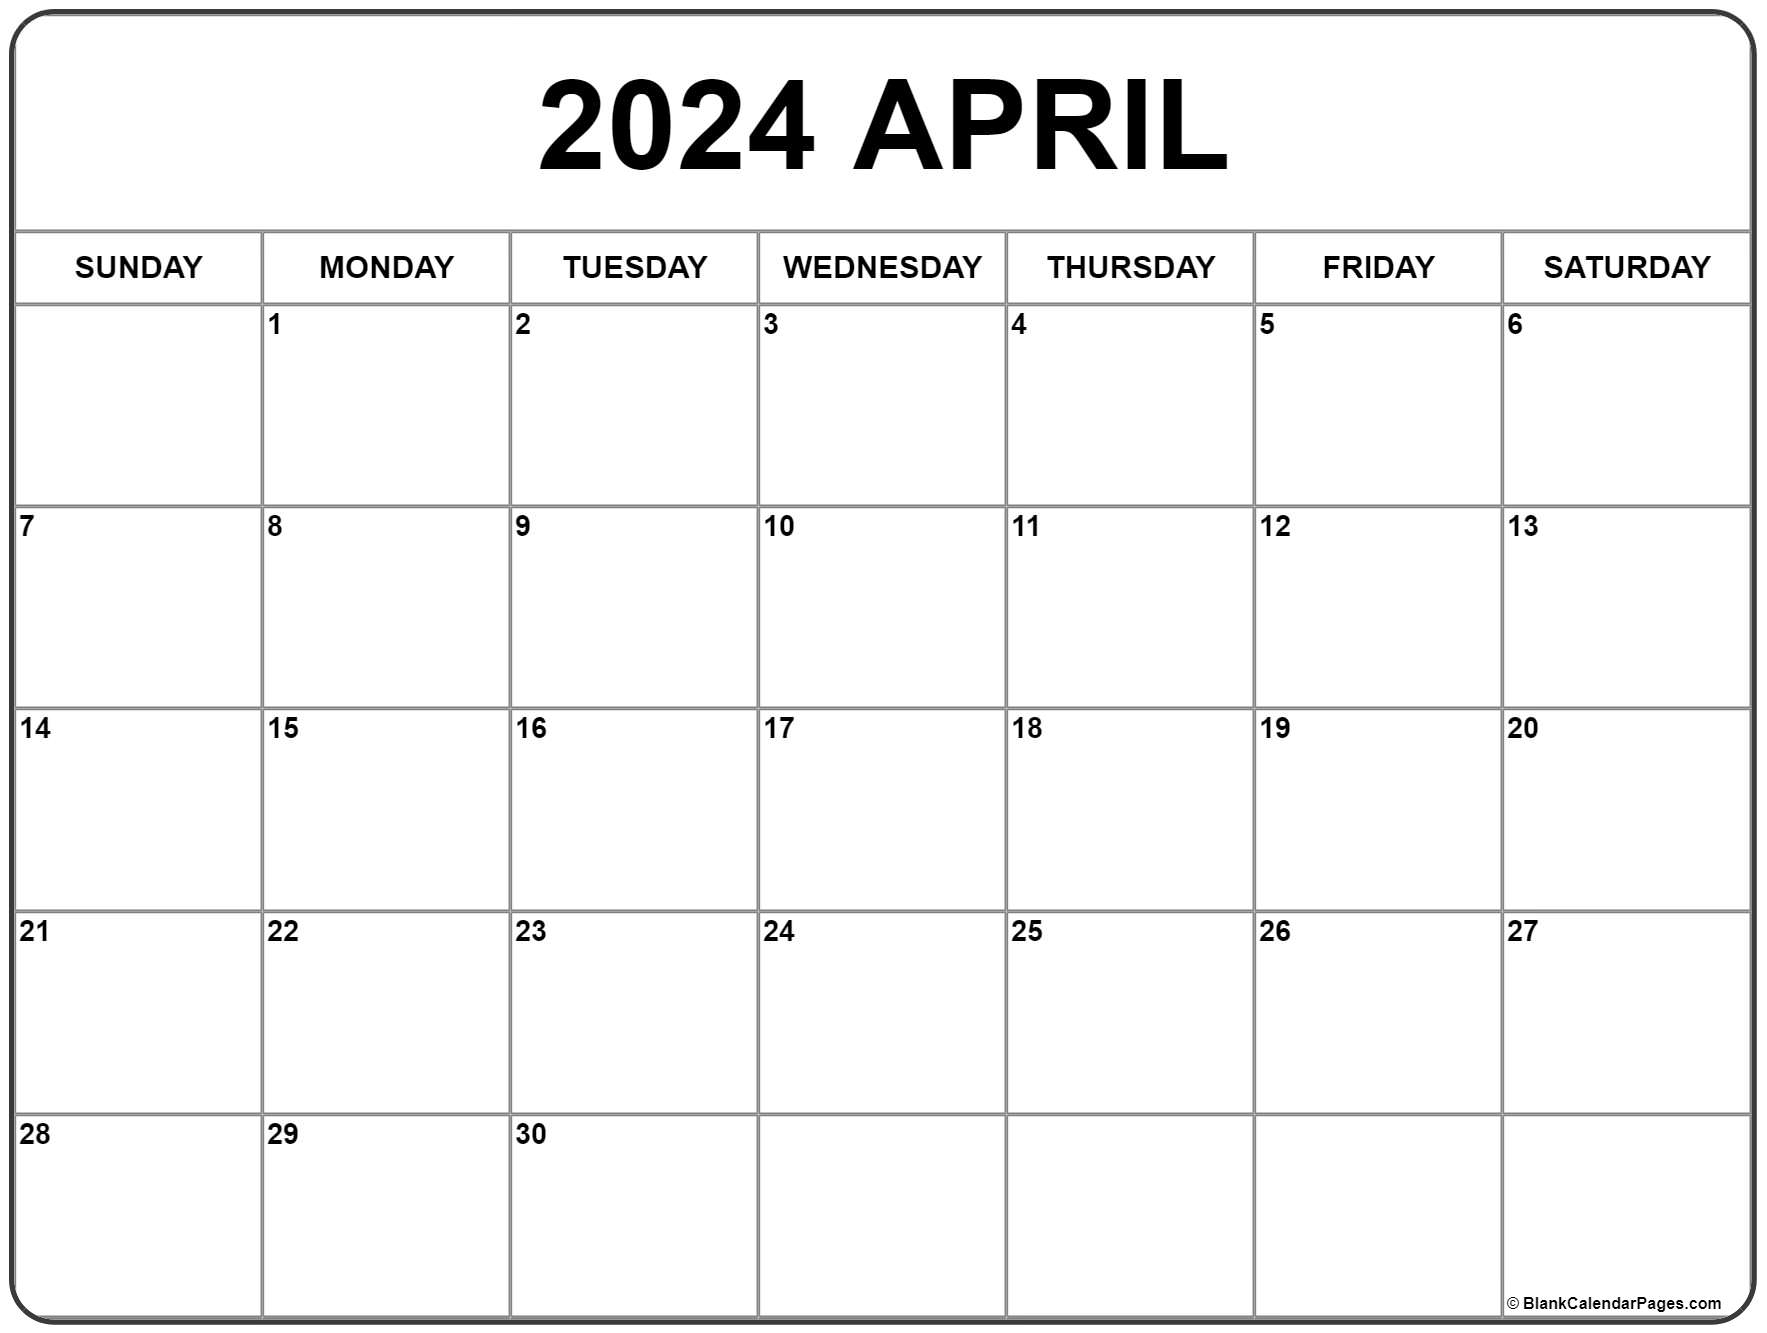 April 2024 Calendar | Free Printable Calendar for Free-Printable-Calendar April 2024